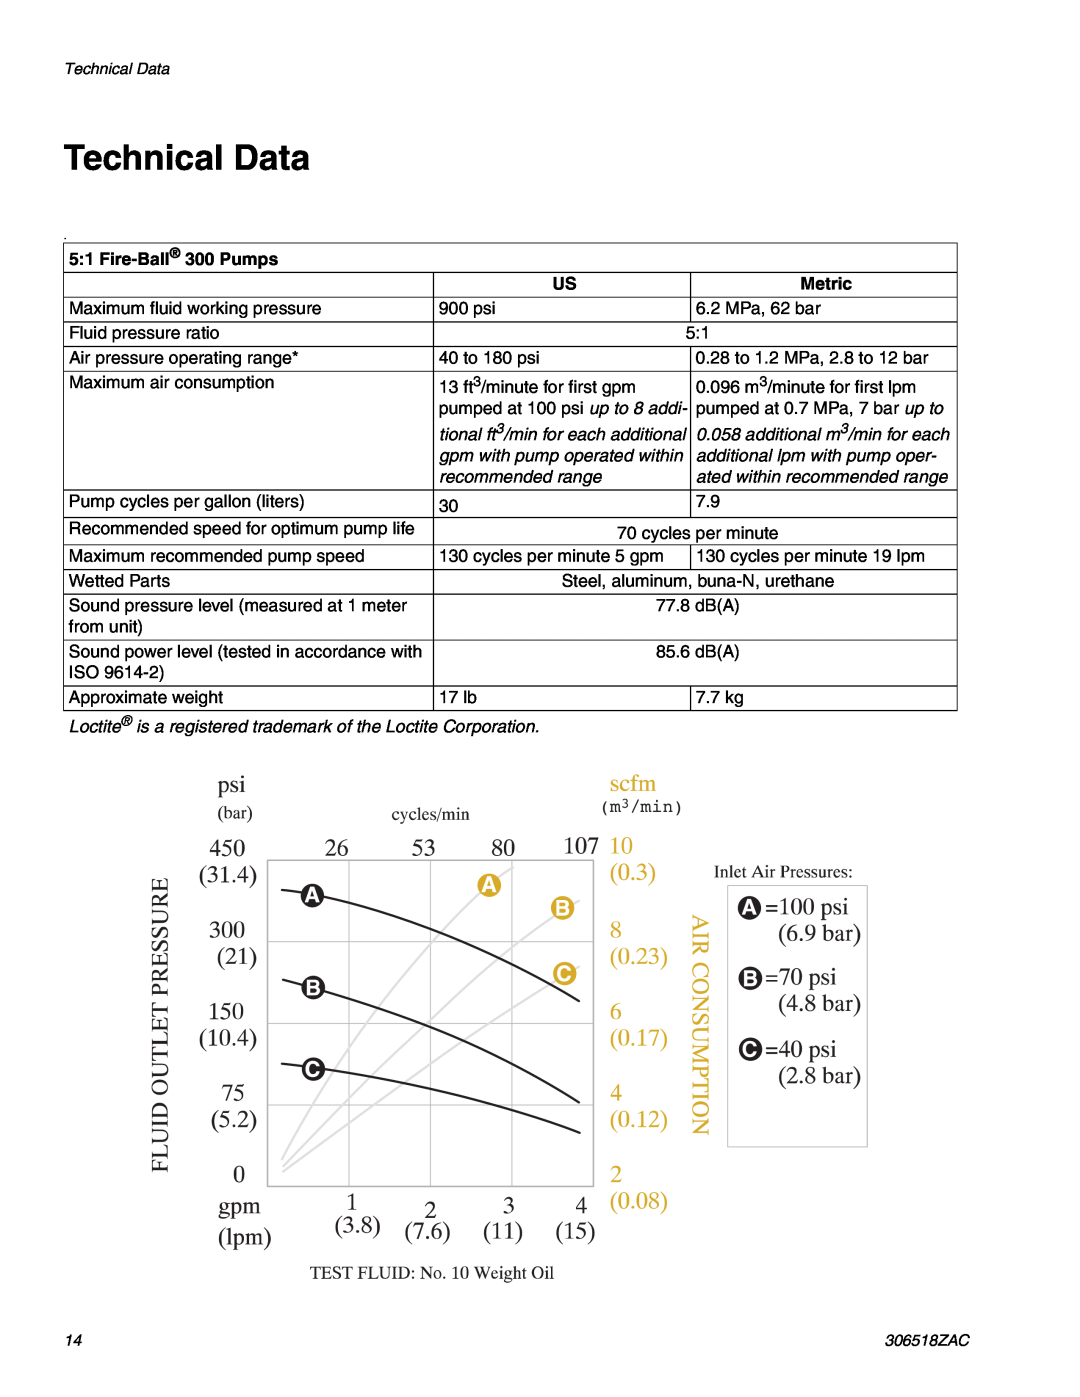 Graco 306518ZAC Technical Data, tional ft3/min for each additional, additional m3/min for each, recommended range 